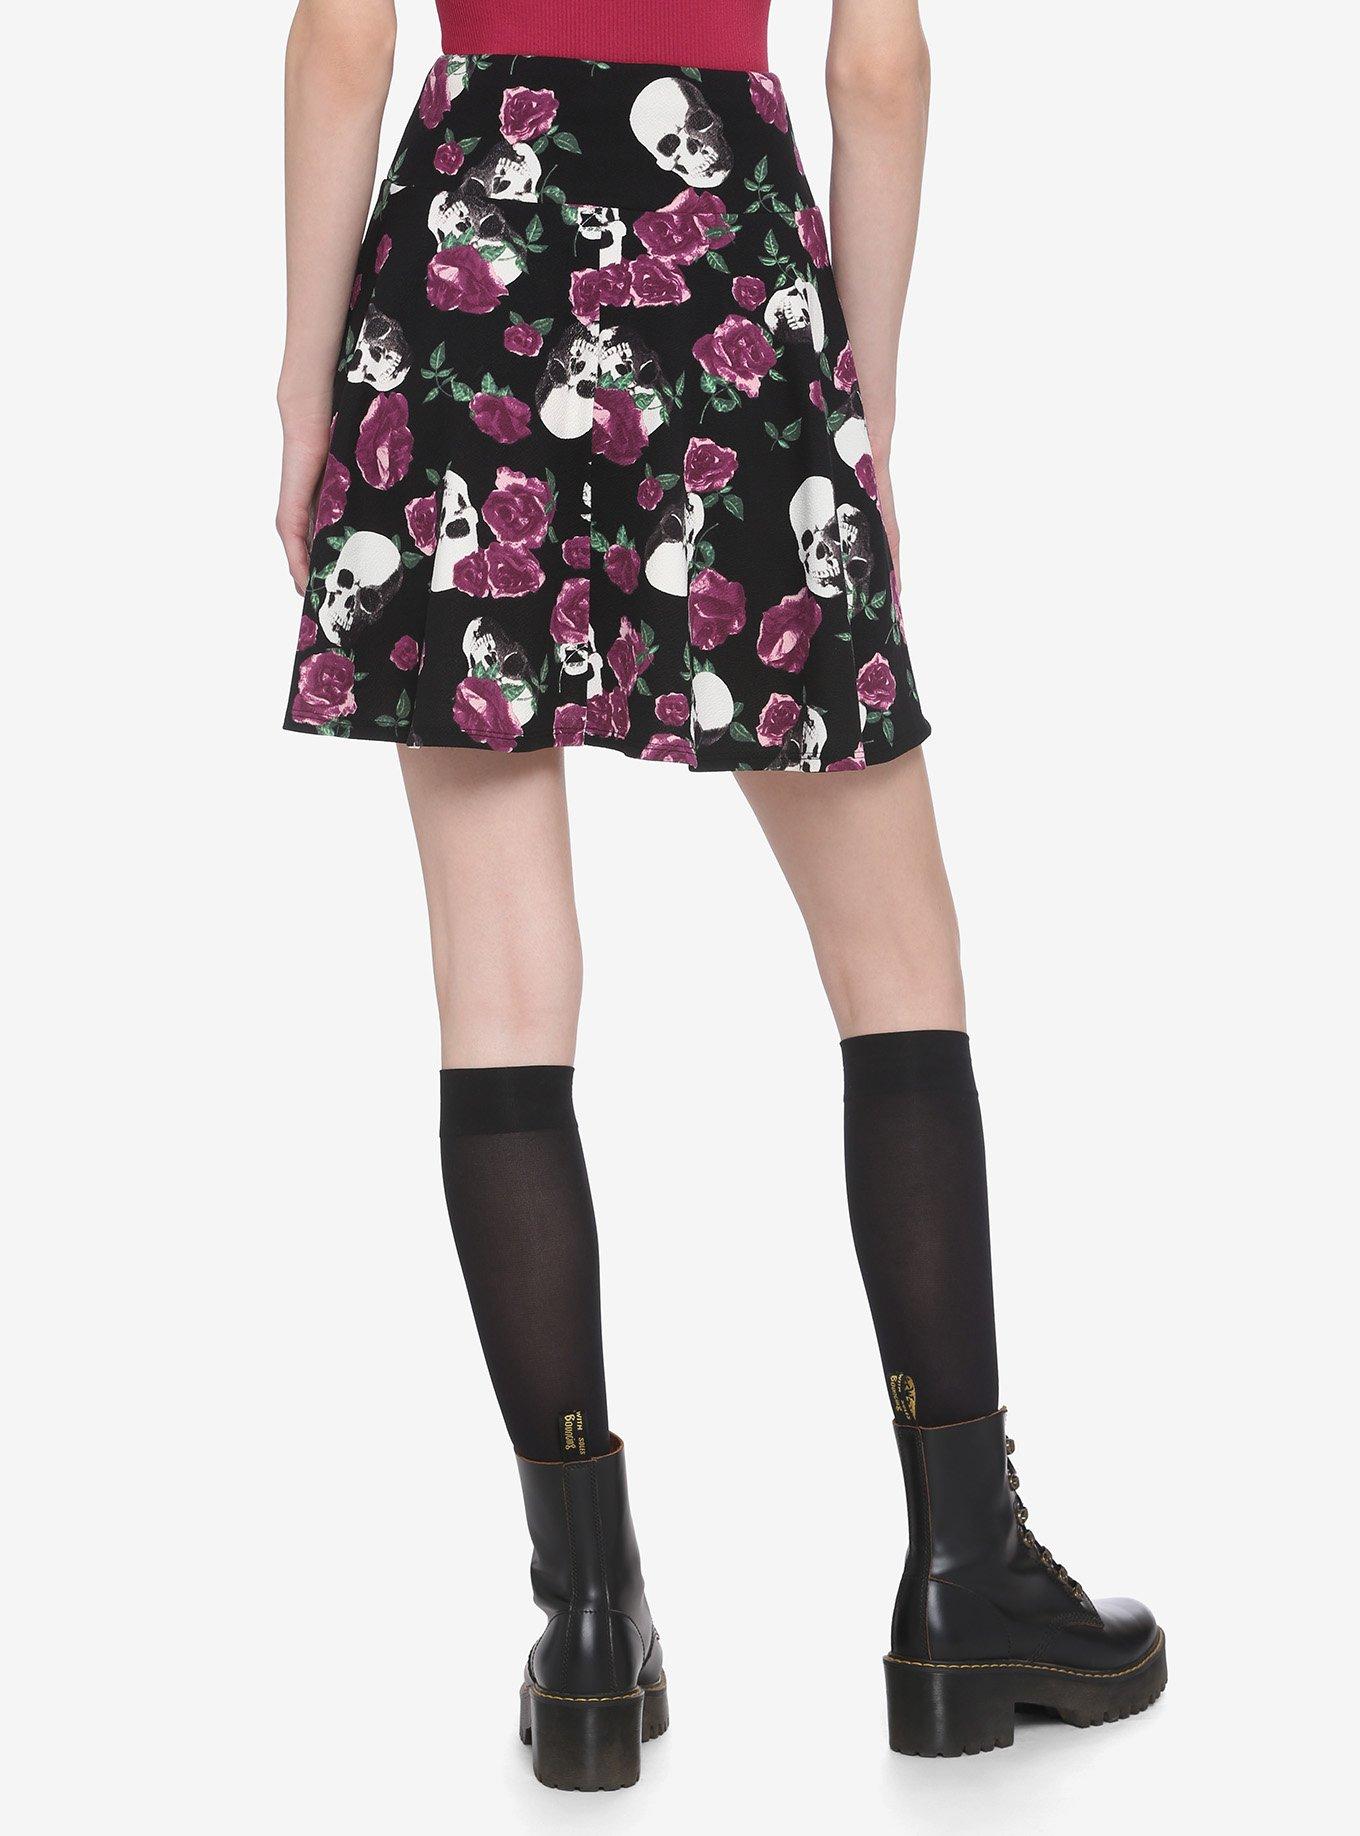 Purple Roses & Skulls Lace-Up Skater Skirt, MULTI, alternate